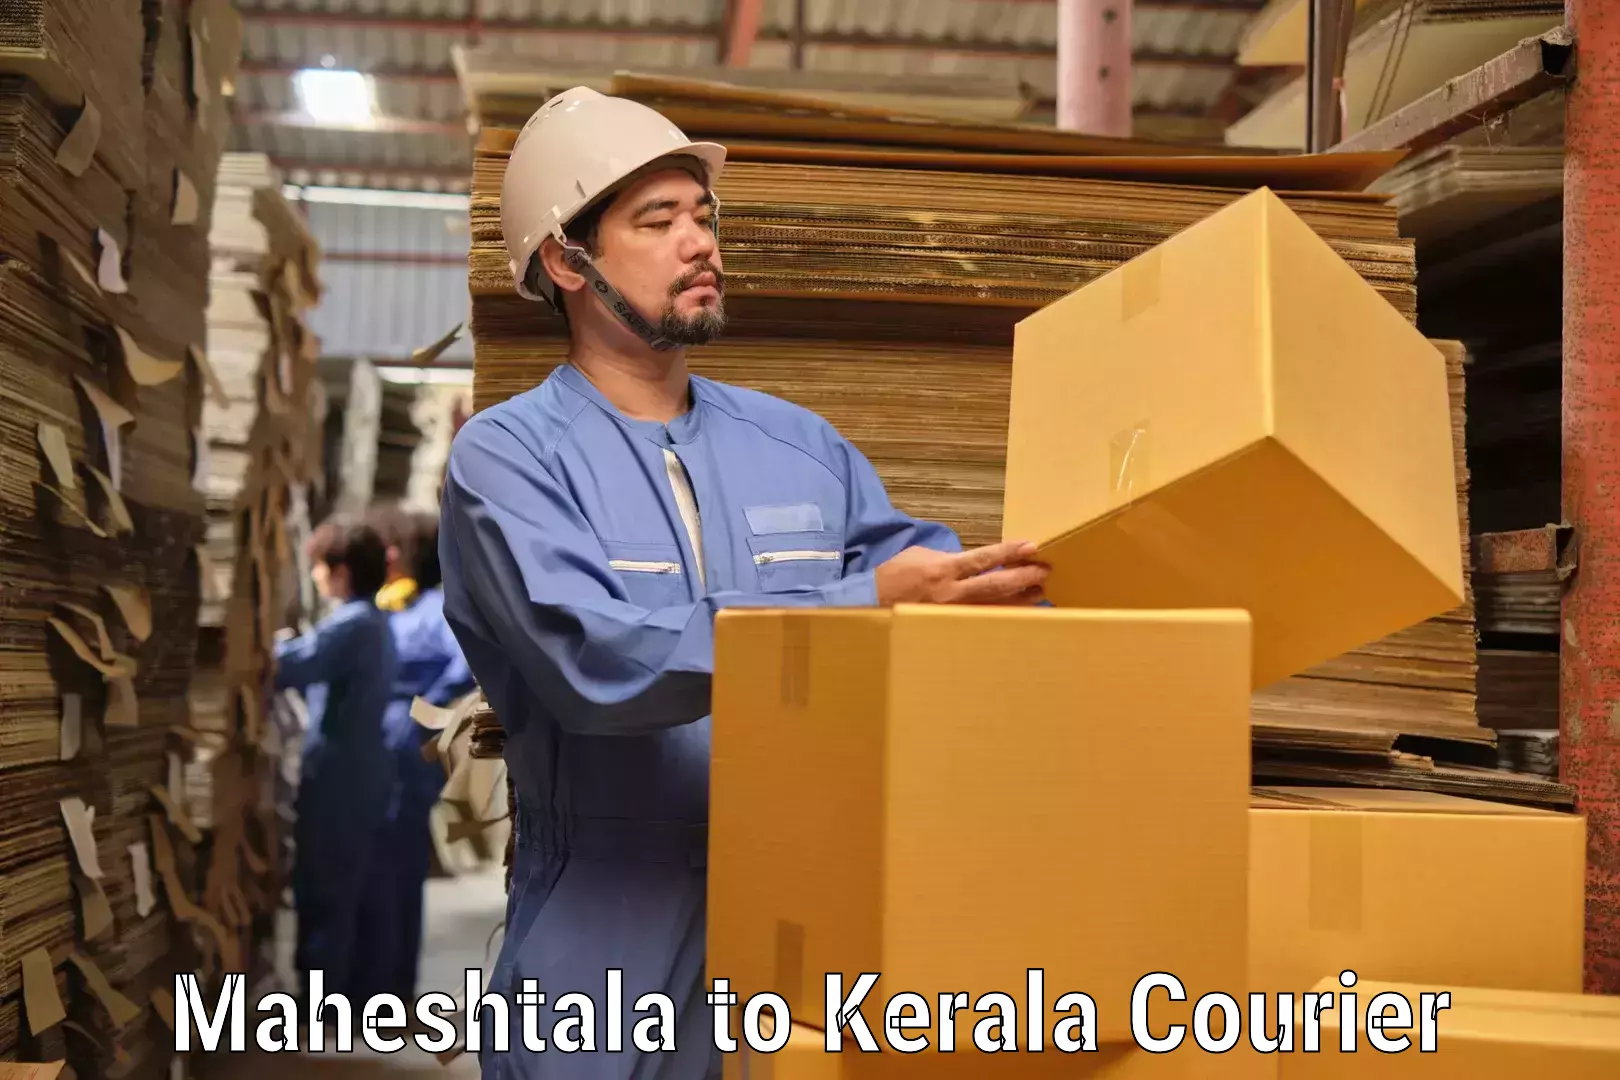 Premium courier solutions Maheshtala to Kattappana